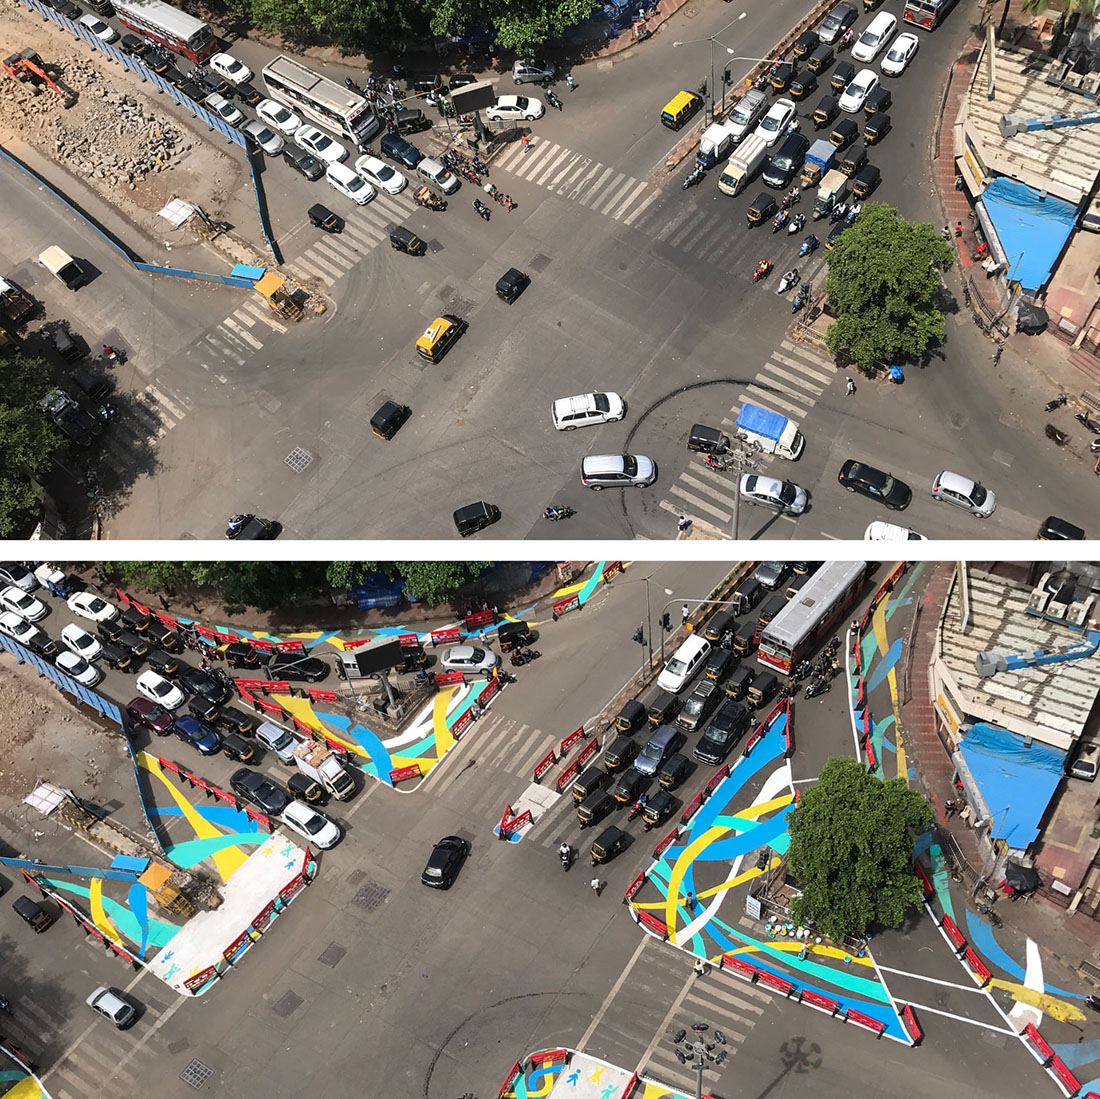 Как с помощью ведра краски сделать город лучше PCNACTOGDCI, краски, перекресток, тротуары, сделать, помощью, Бразилия, пространство, также, Здесь, Индия, Перекресток, пешеходам, результате, город, преобразовали, автомобилей, парковки, всего, безопасности